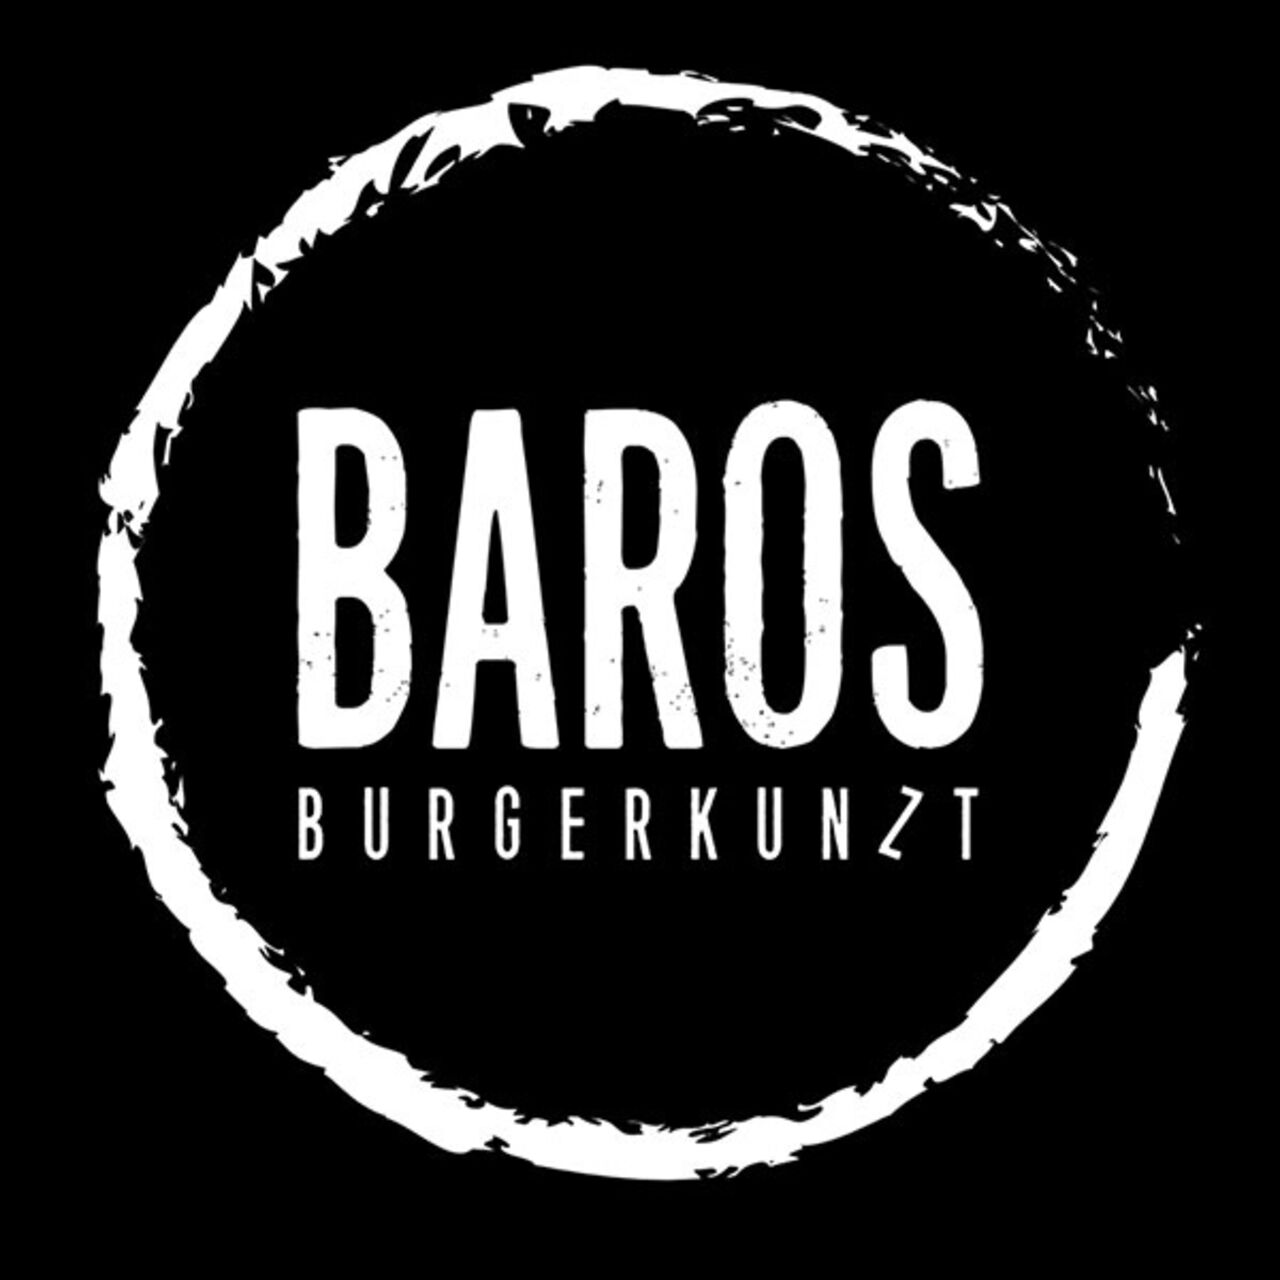 A photo of Baros